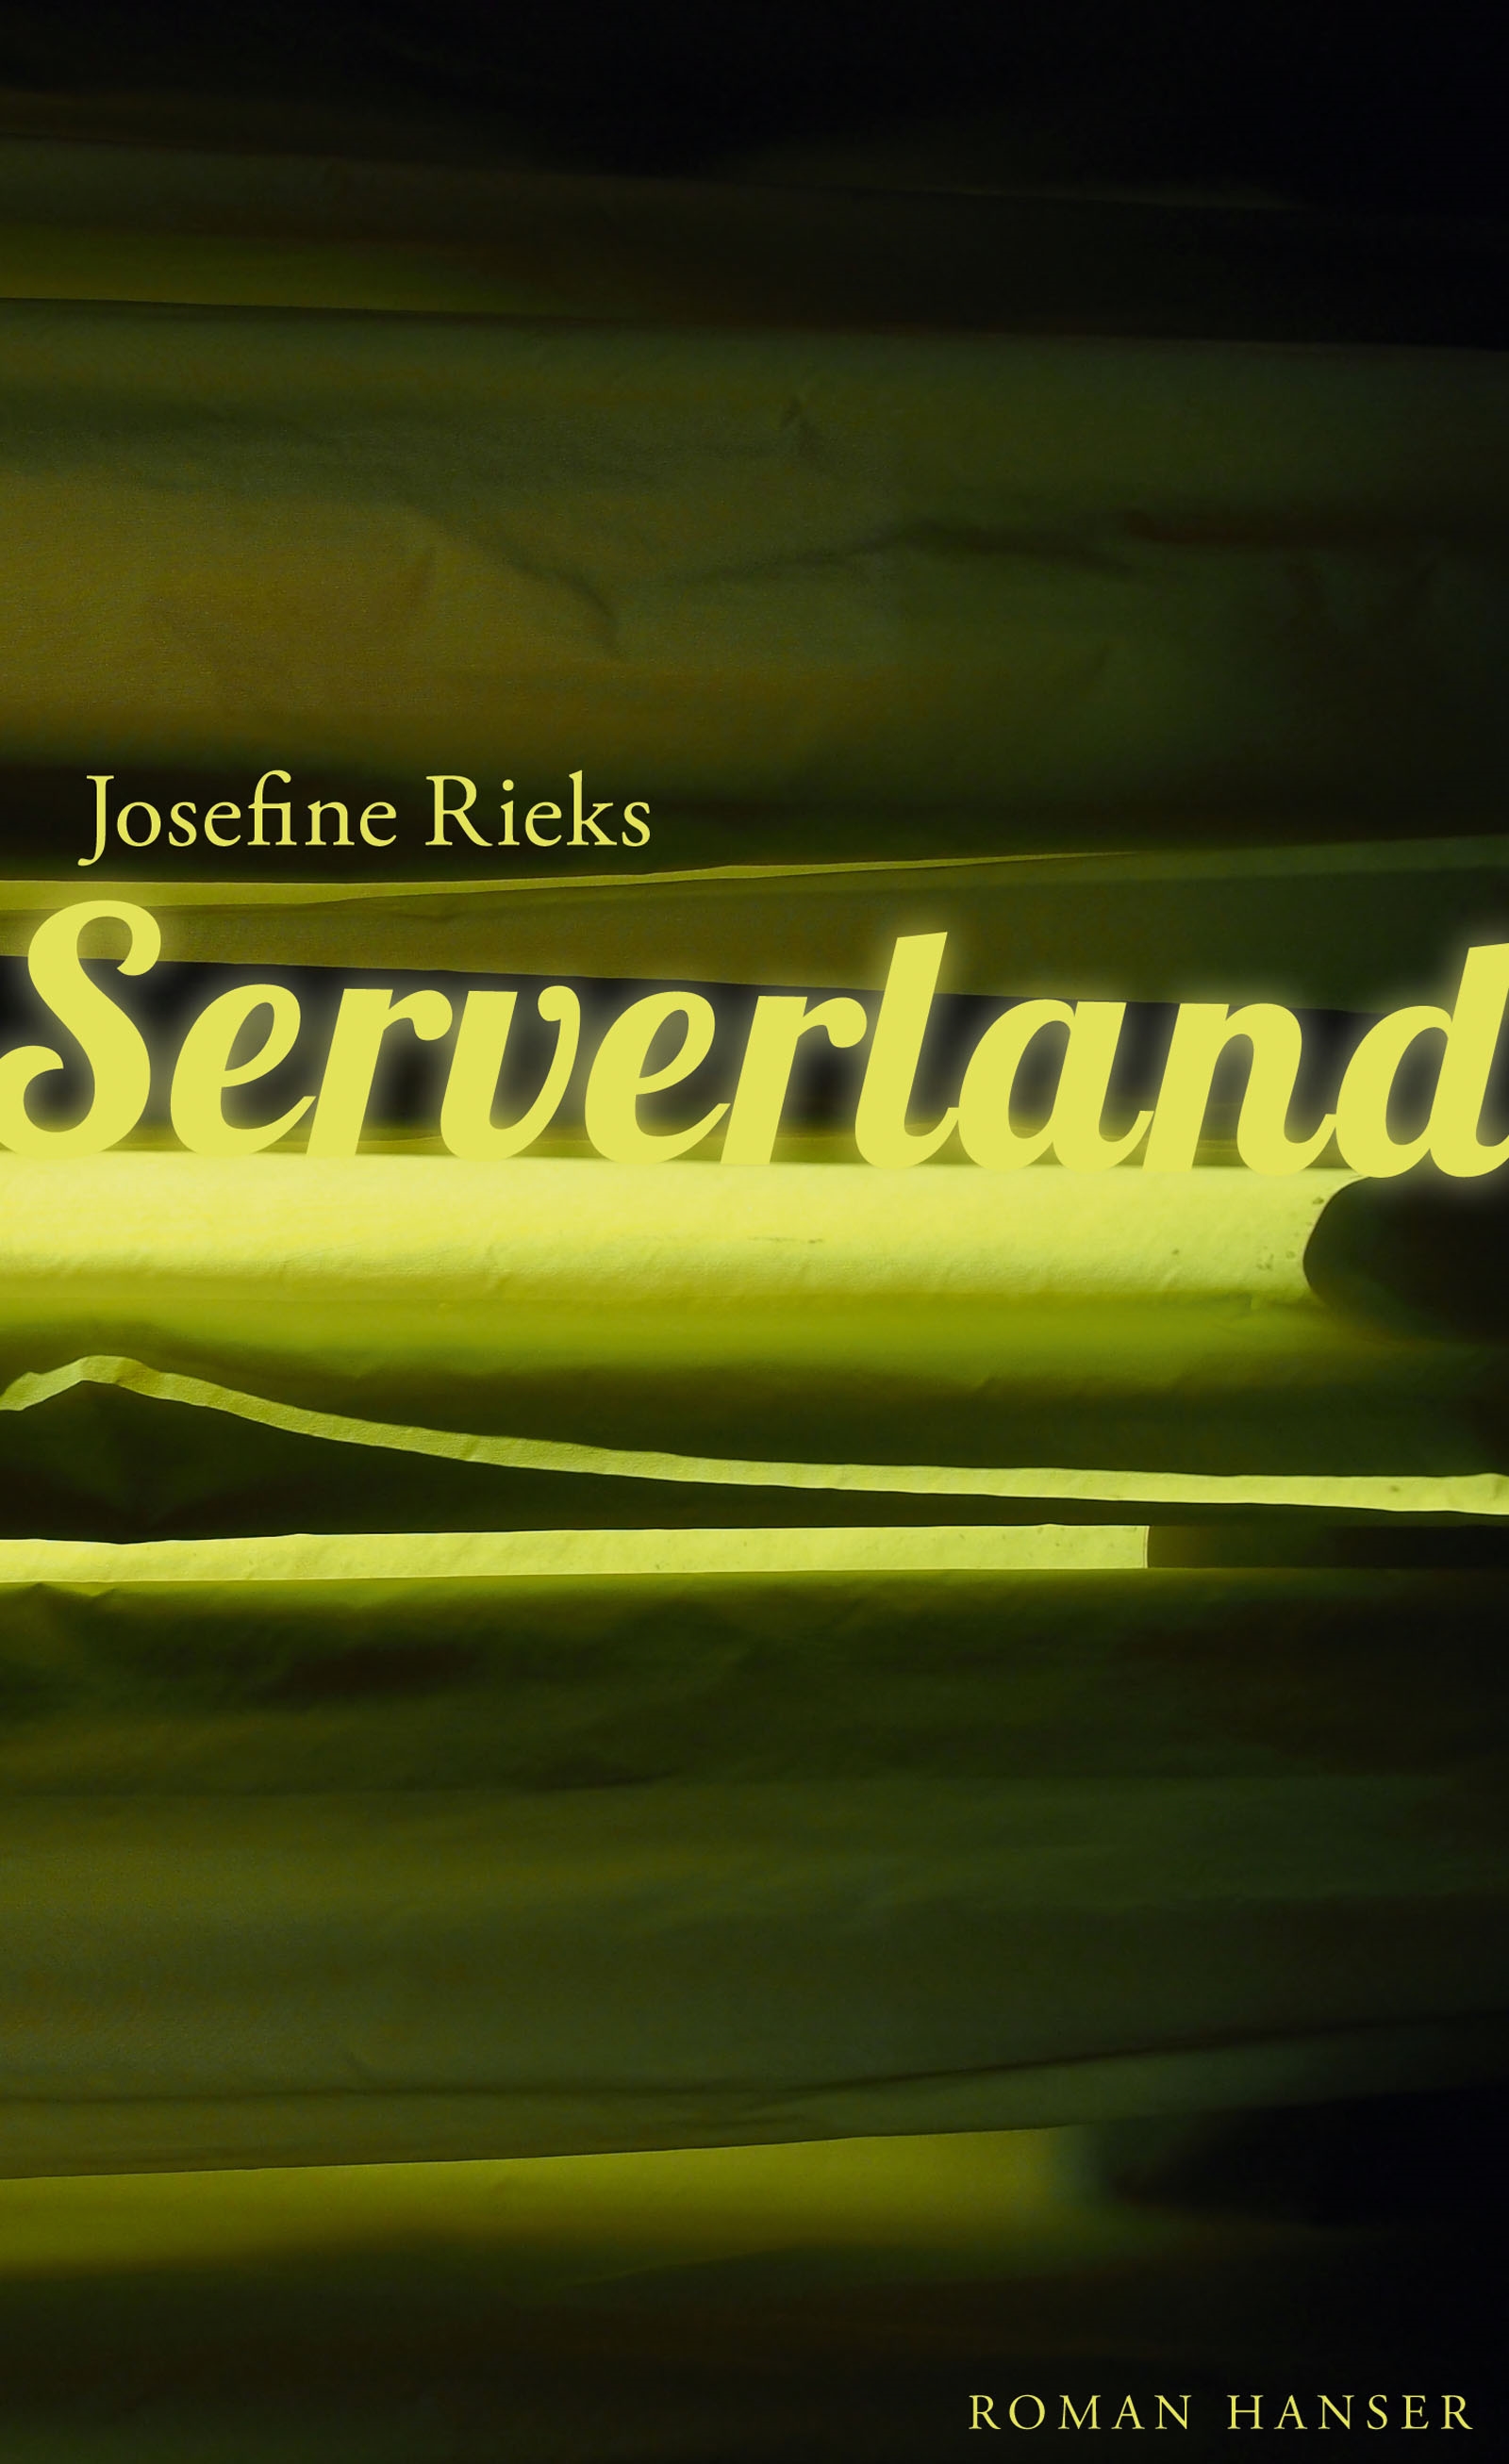 Serverland